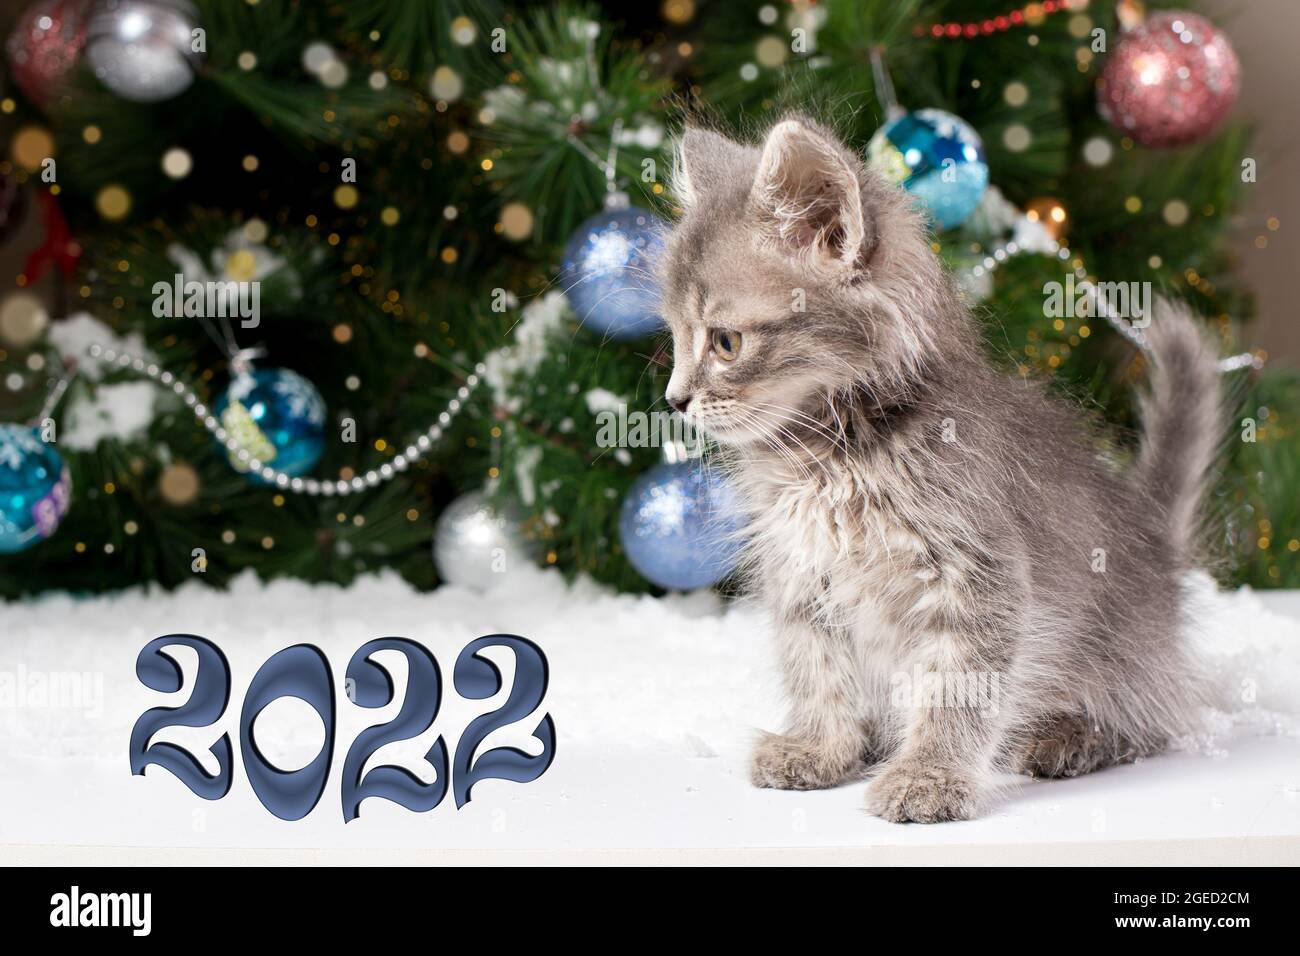 Carte de Noël - un chaton est assis dans la neige près de l'arbre. Nouvelle année 2022. Banque D'Images